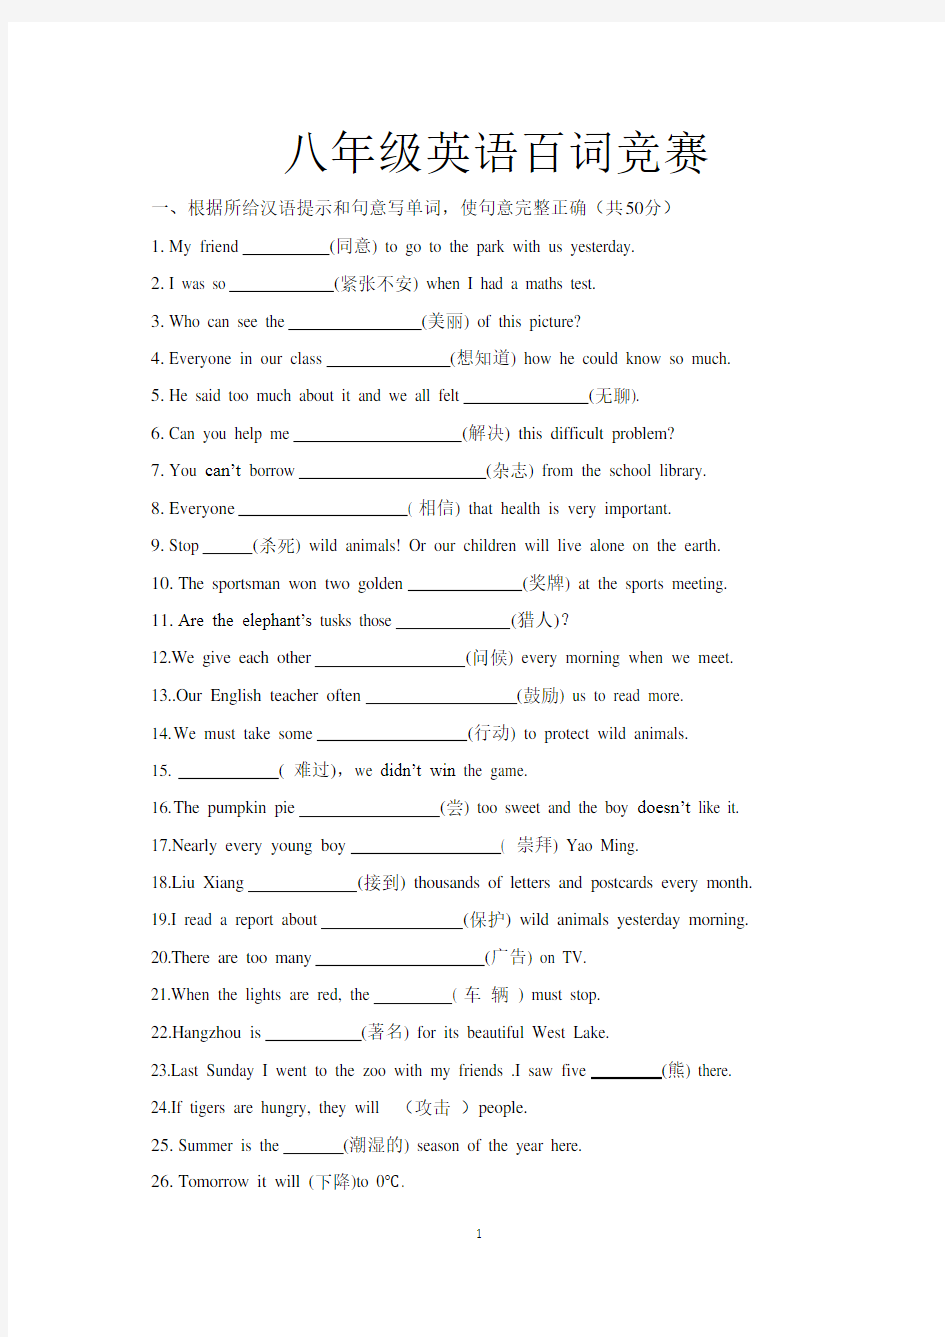 (完整版)八年级英语词汇竞赛100题(含答案)